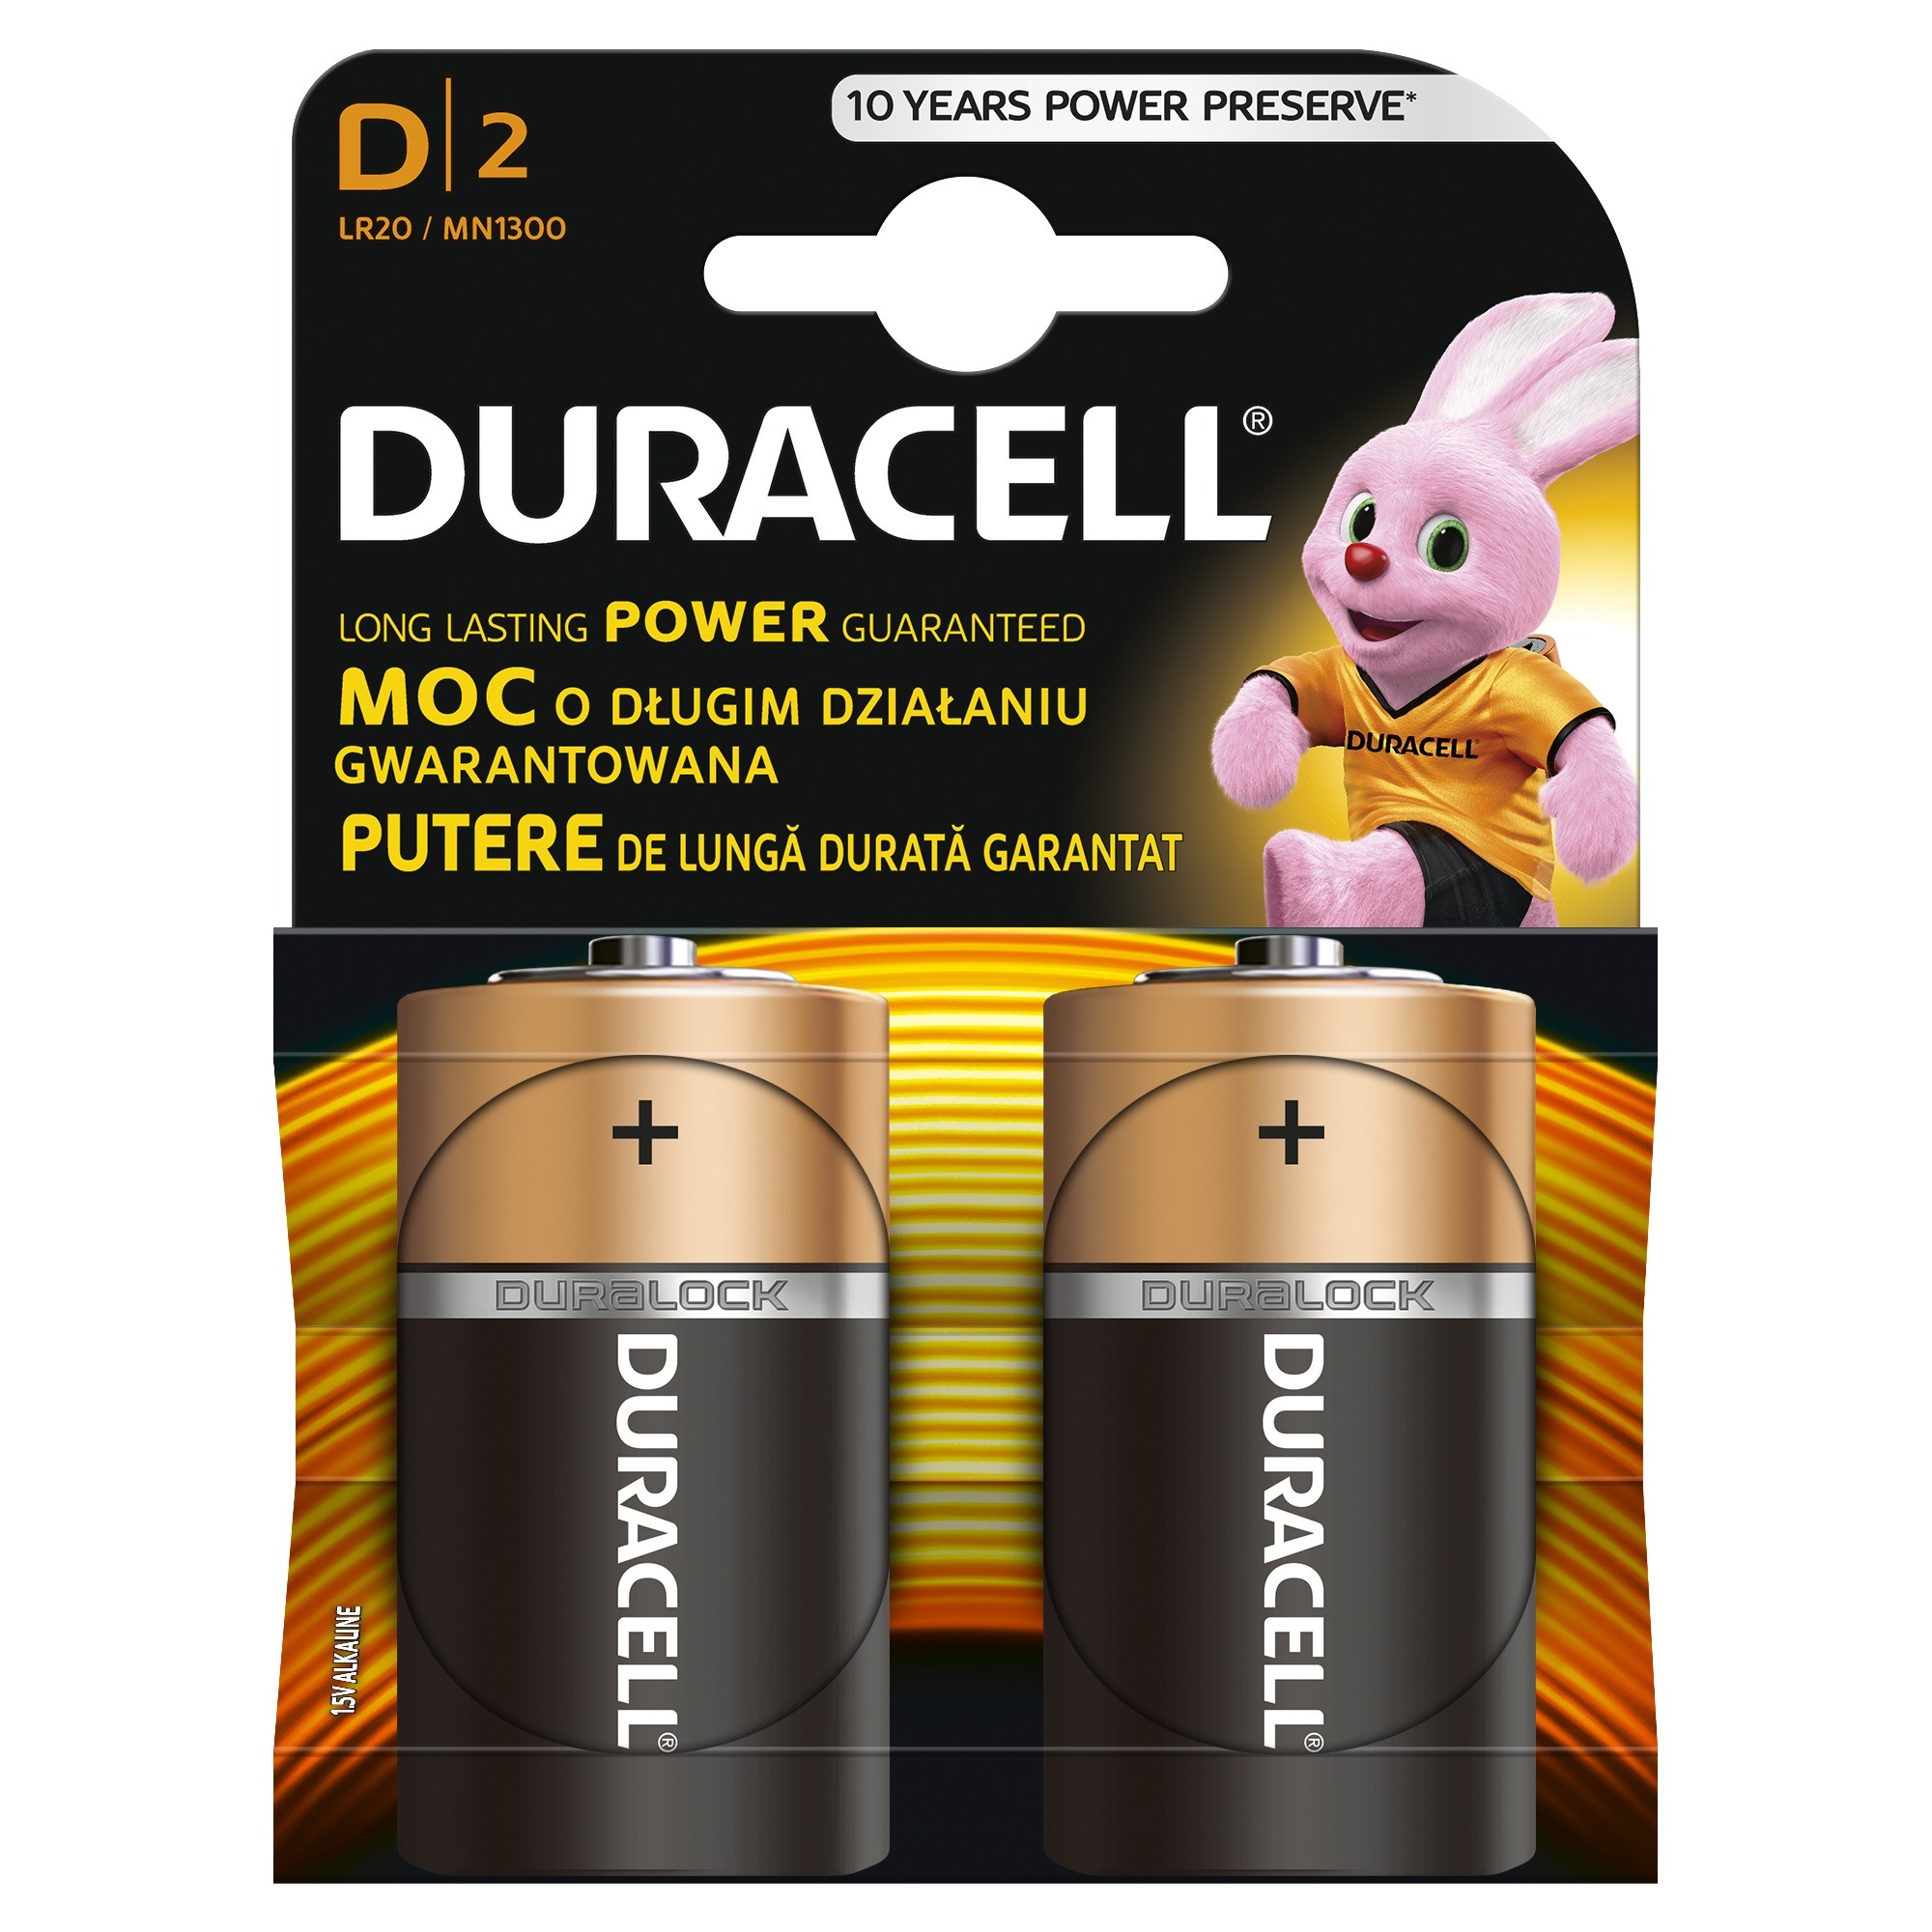 Батареи элементы питания. Батарейки Duracell d/LR 20. Батарейка Duracell lr20. Батарейки Duracell Basic d/lr20-2bl. Батарейка Duracell lr20-2bl.